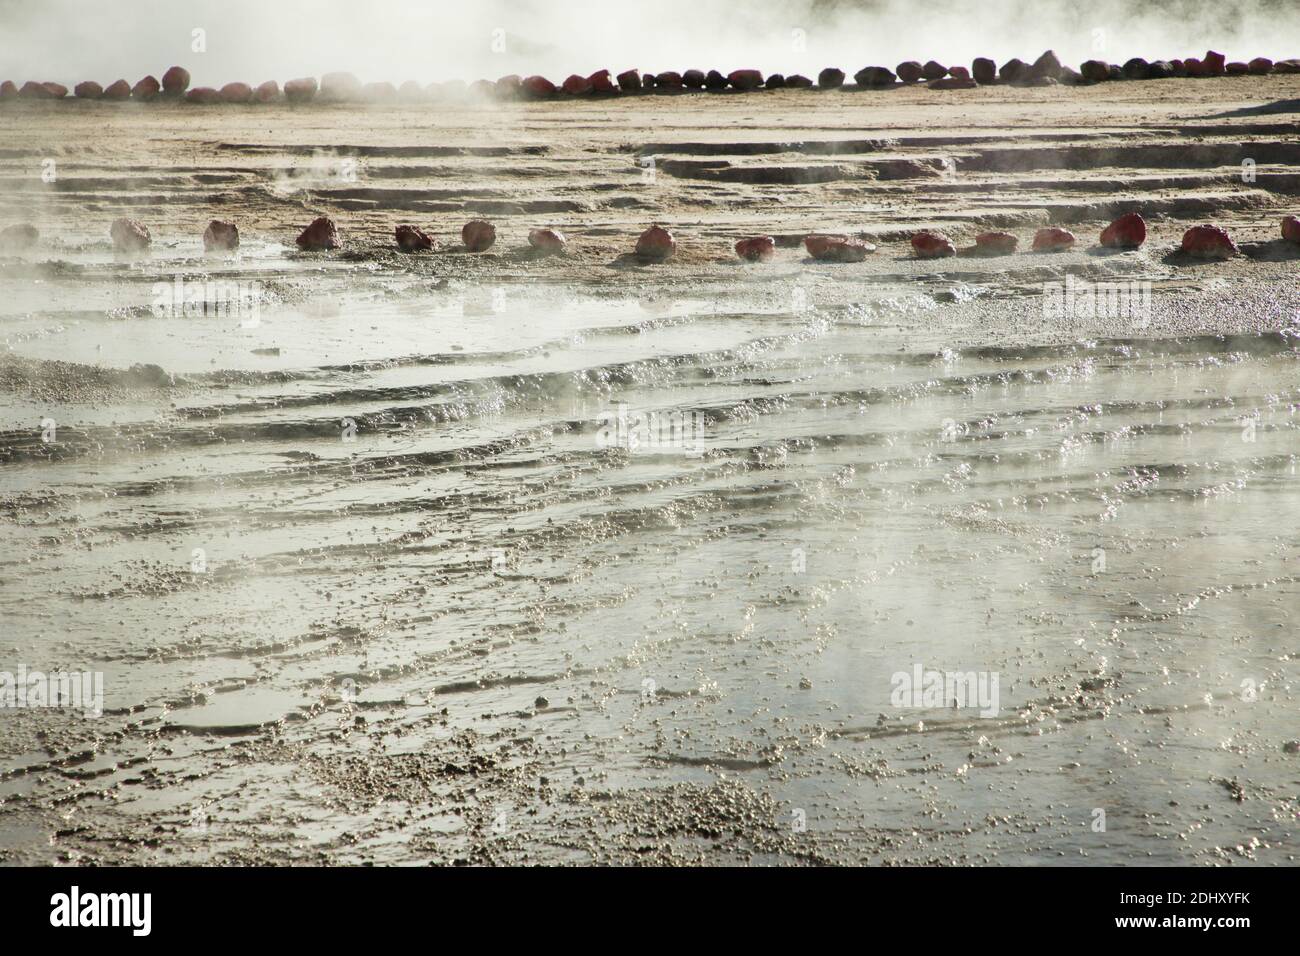 Blattflüsse lagern gelben Schwefel und andere bunte Mineralien auf dem Boden bei El Tatio Geysir Feld und Geothermie-Bereich, die Anden, Chile Stockfoto